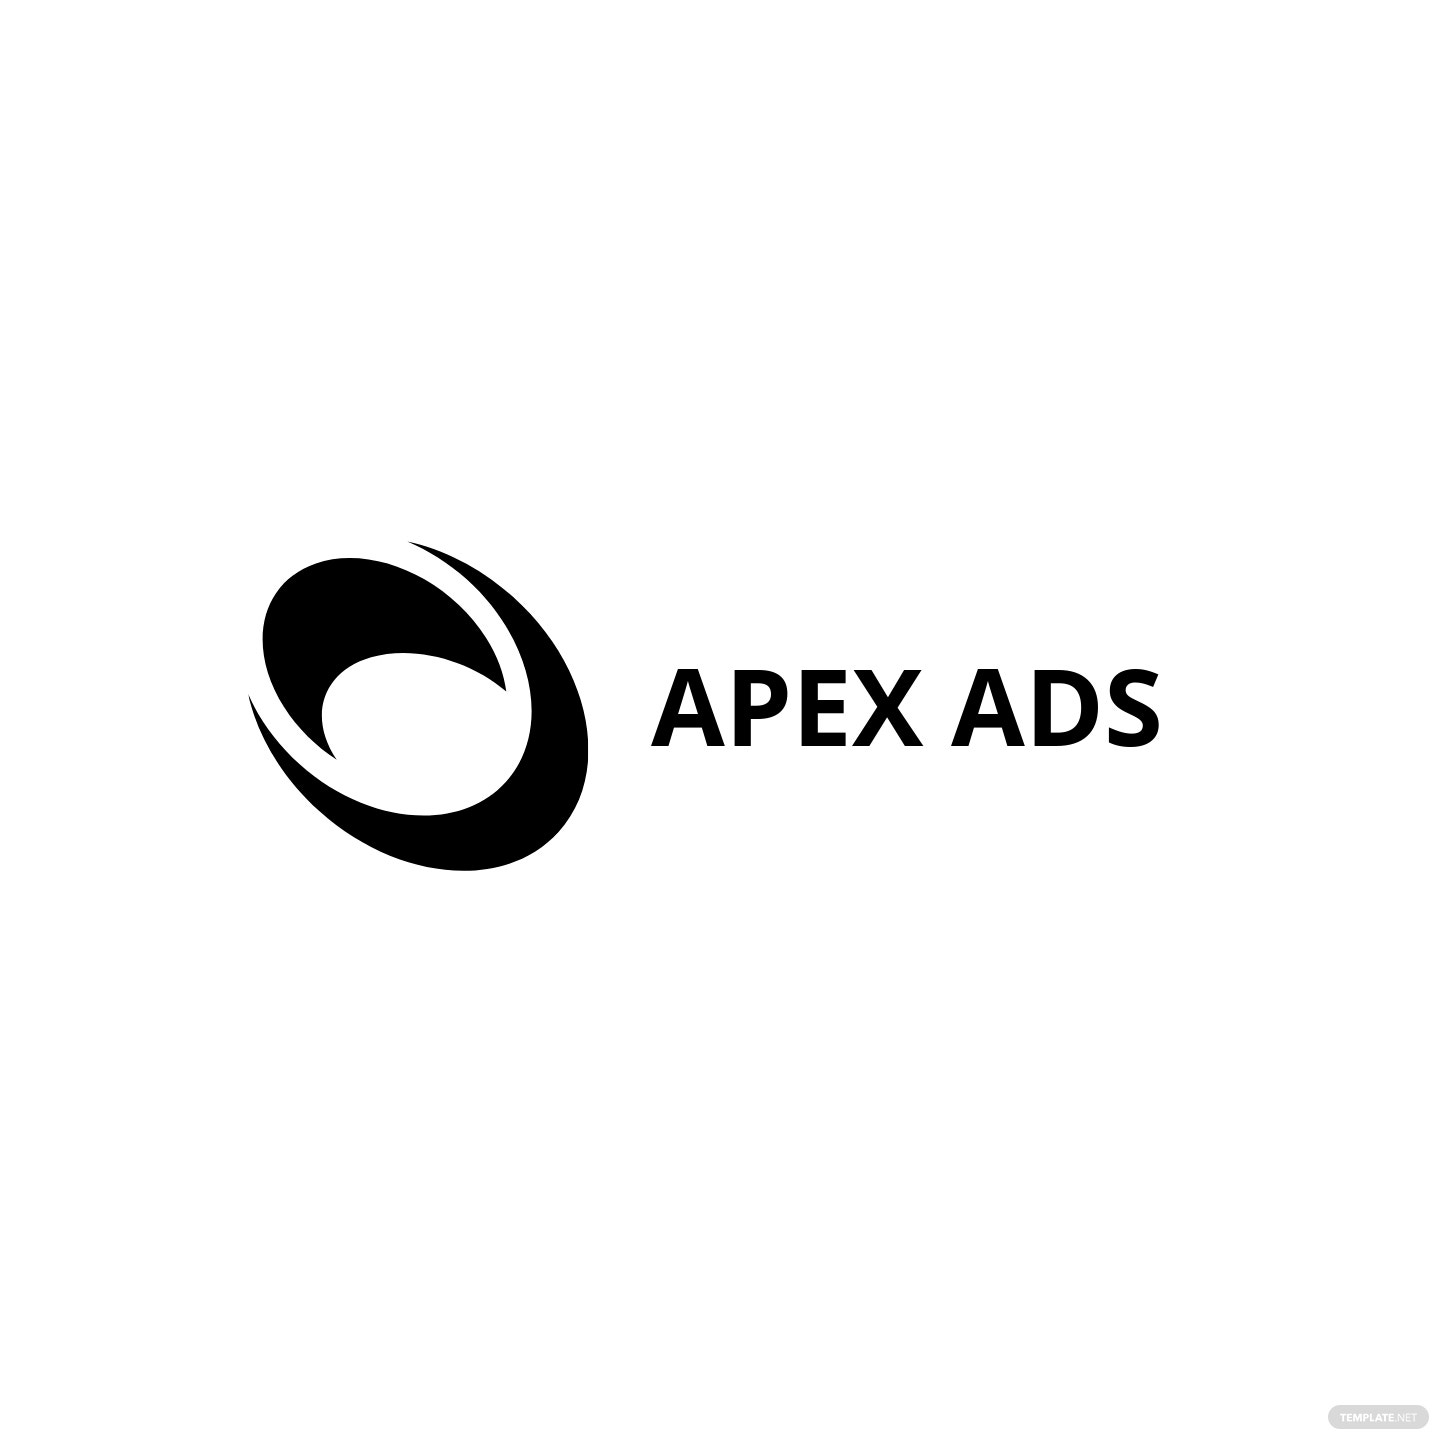 advertising consultant logo design template